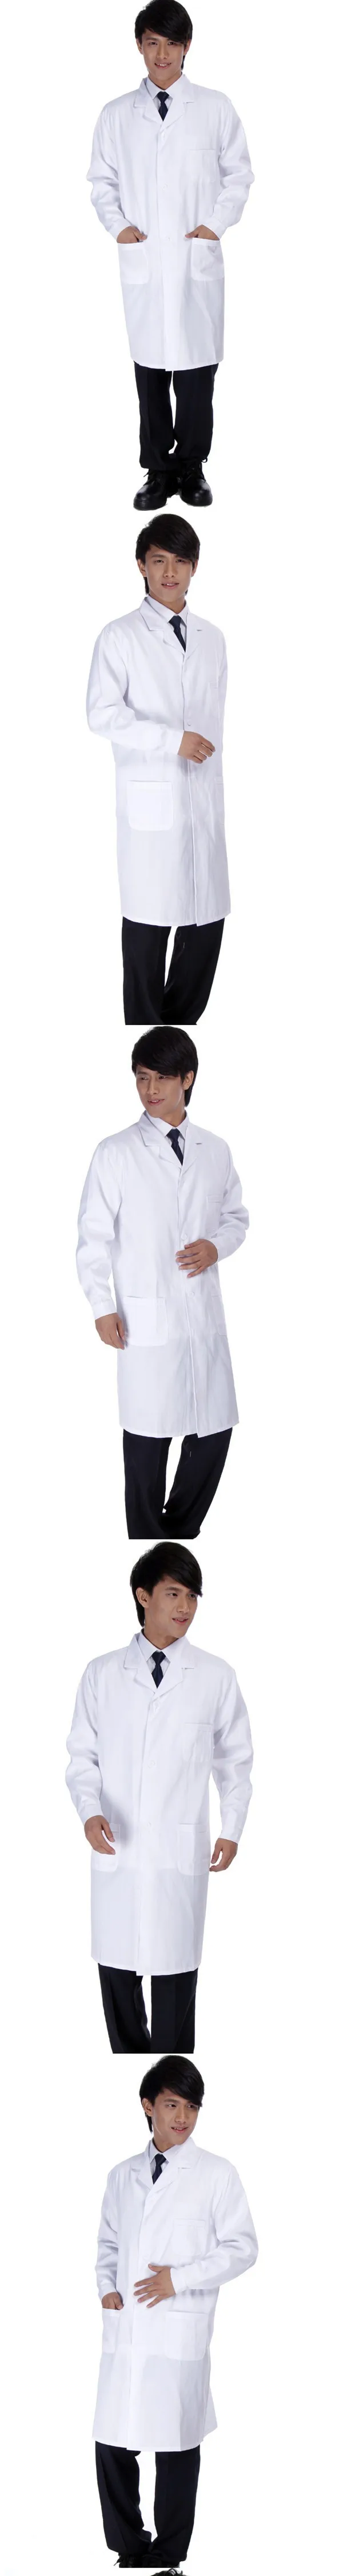 Женский или мужской белый медицинский Халат, одежда, медицинские услуги, униформа медсестры, одежда с длинным рукавом, полиэстер, защитные халаты, ткань